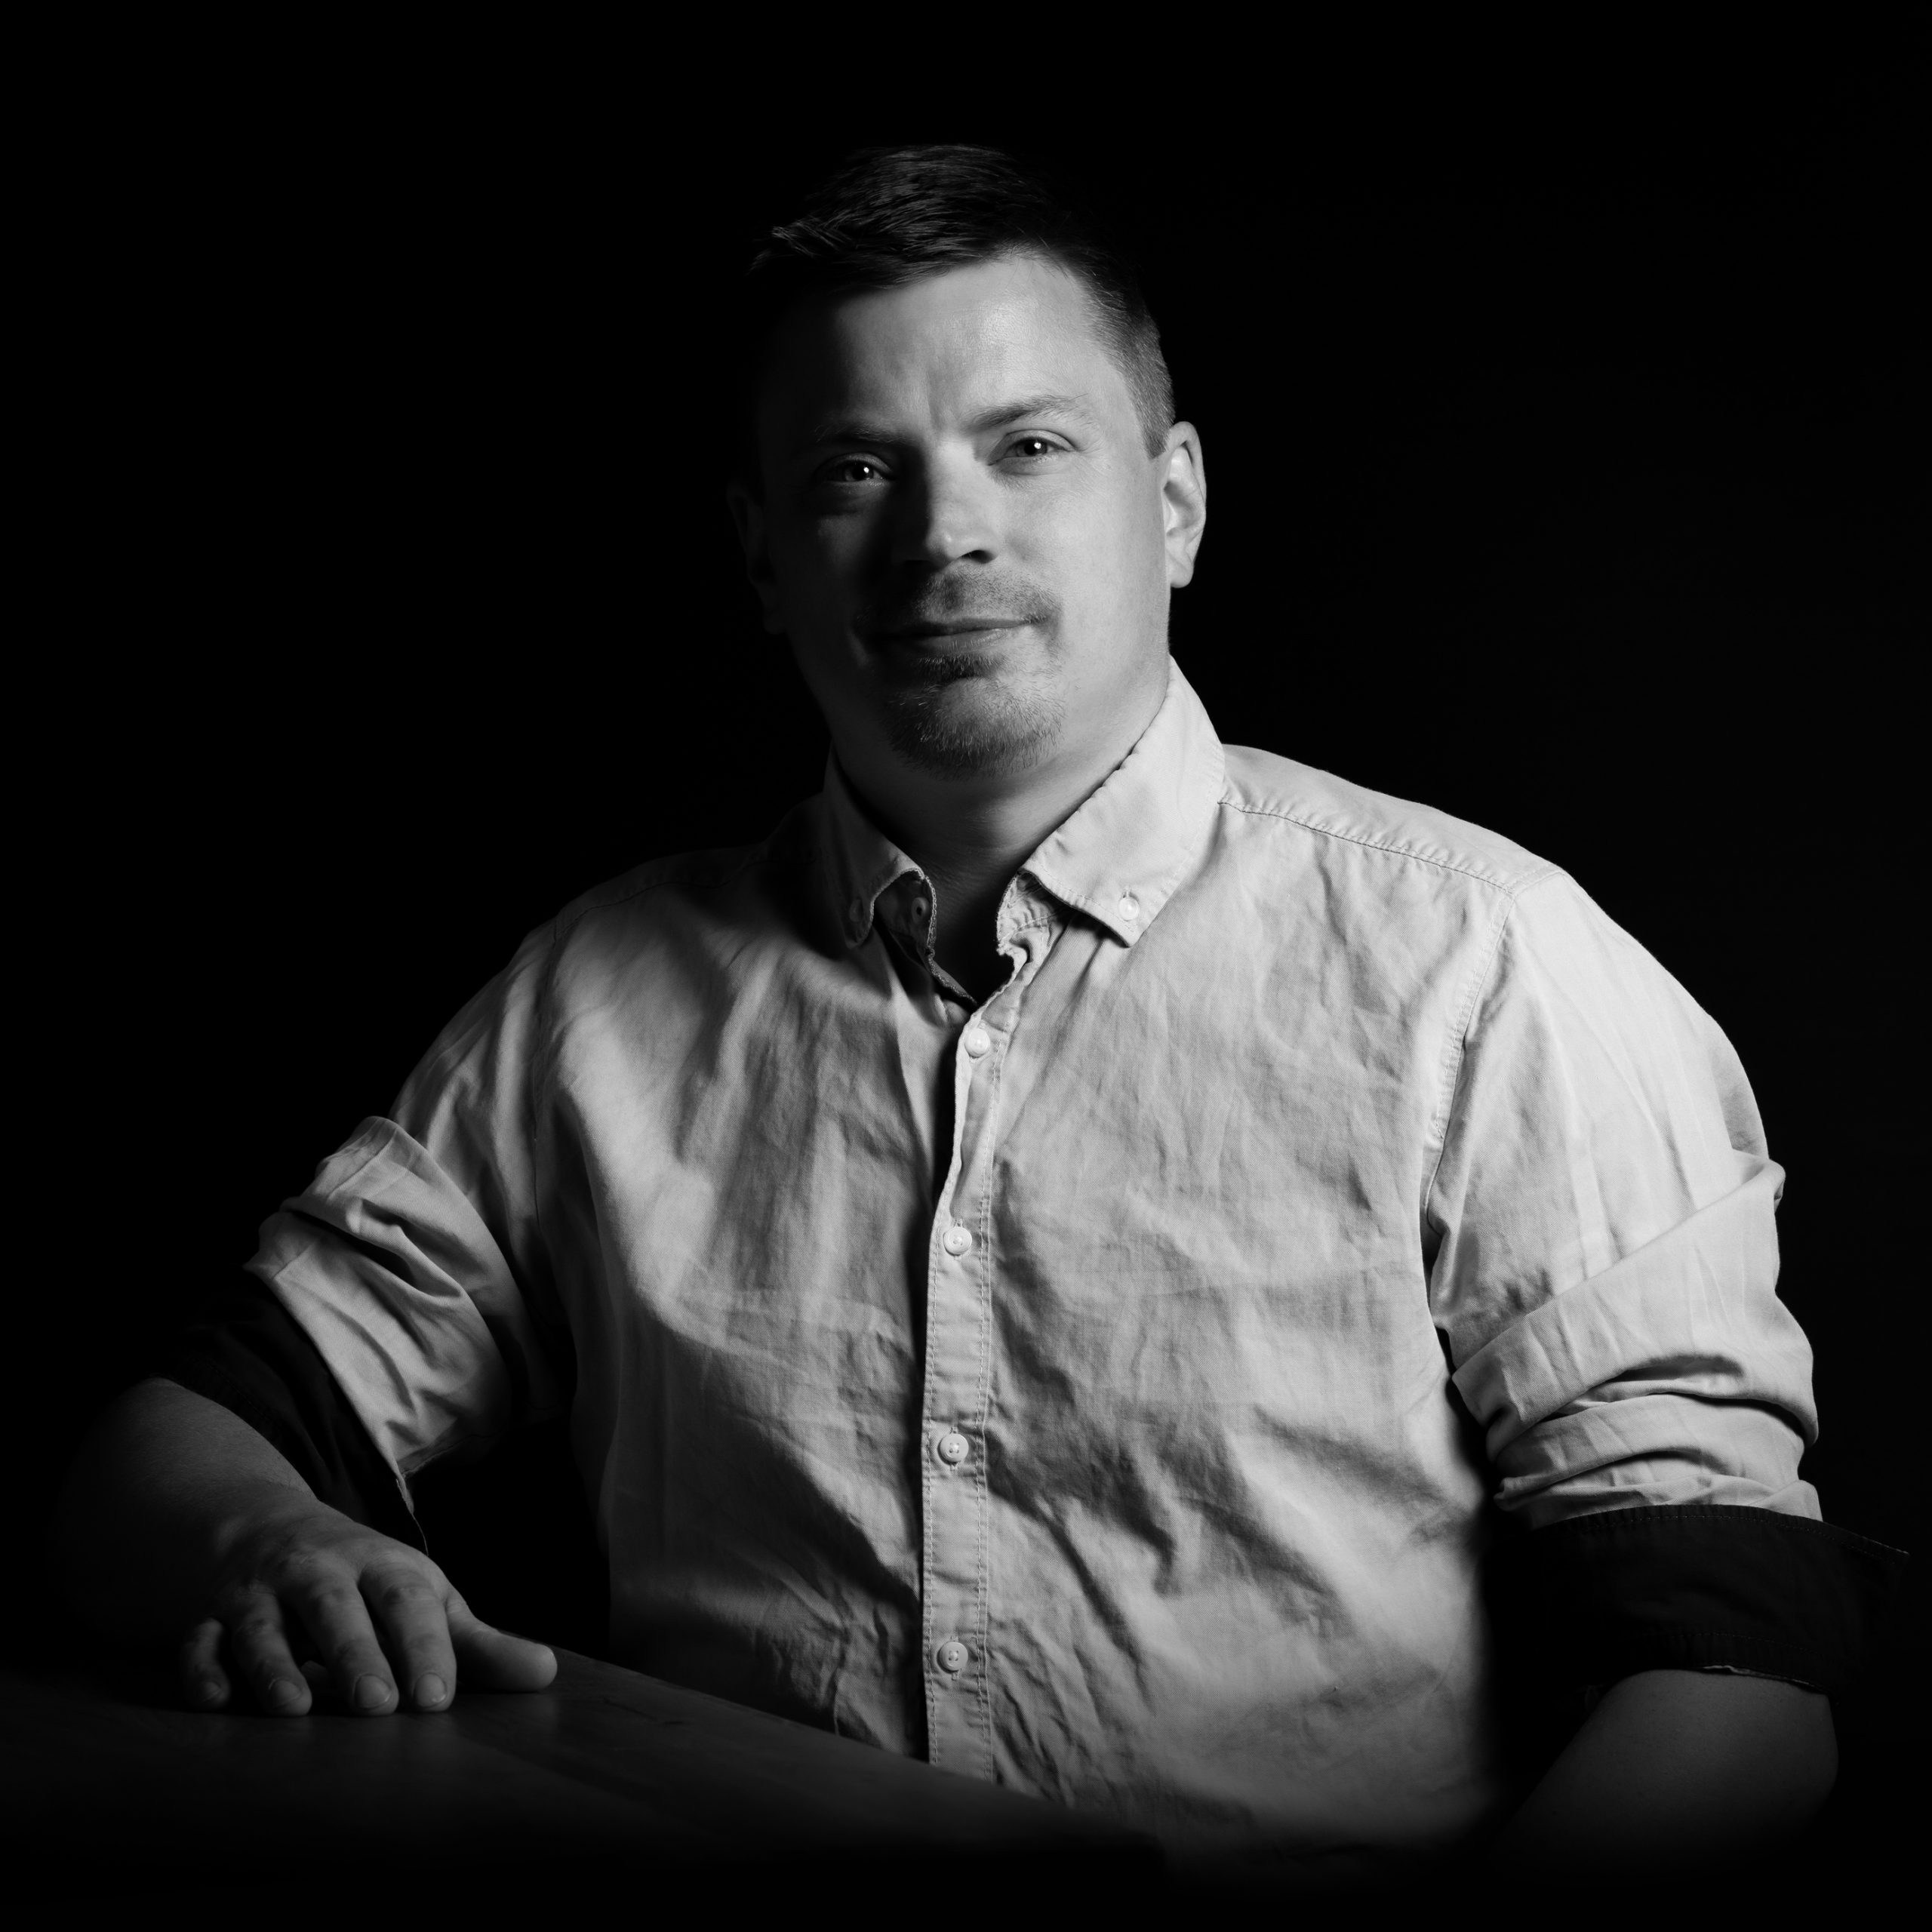 Portrait des Projektmanagers von ETTLIN LUX in schwarz weiß